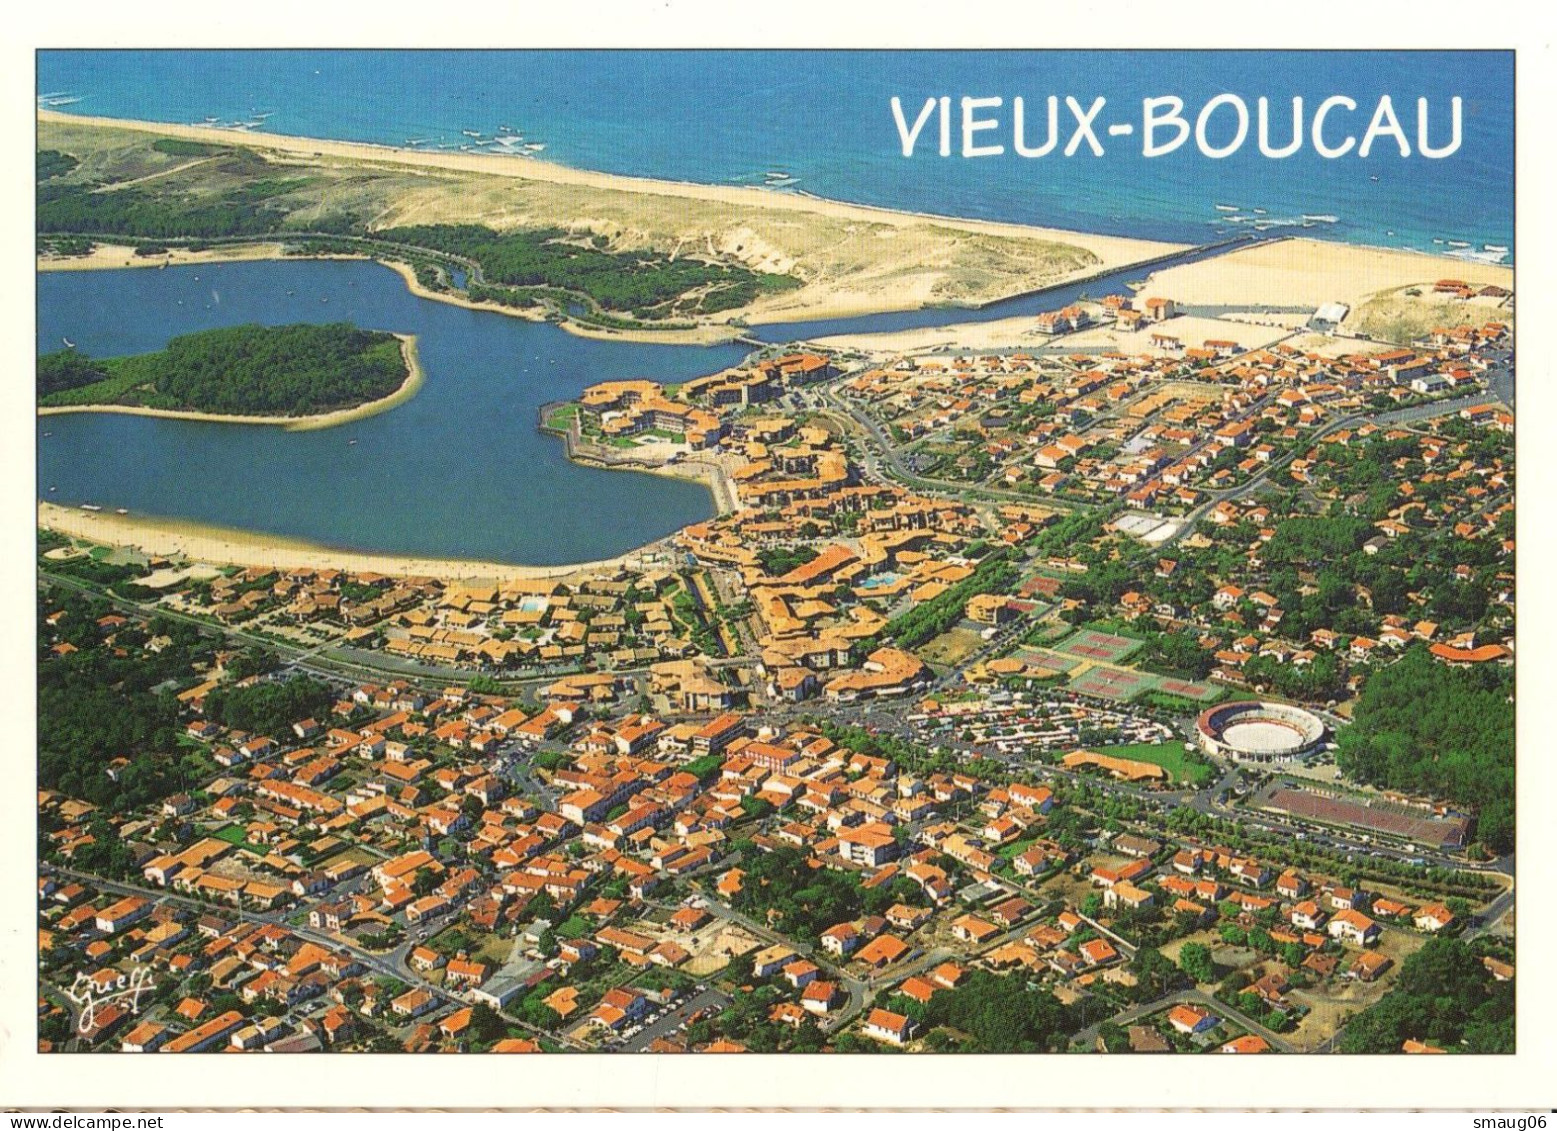 40 - VIEUX-BOUCAU - VUE AÉRIENNE - Vieux Boucau